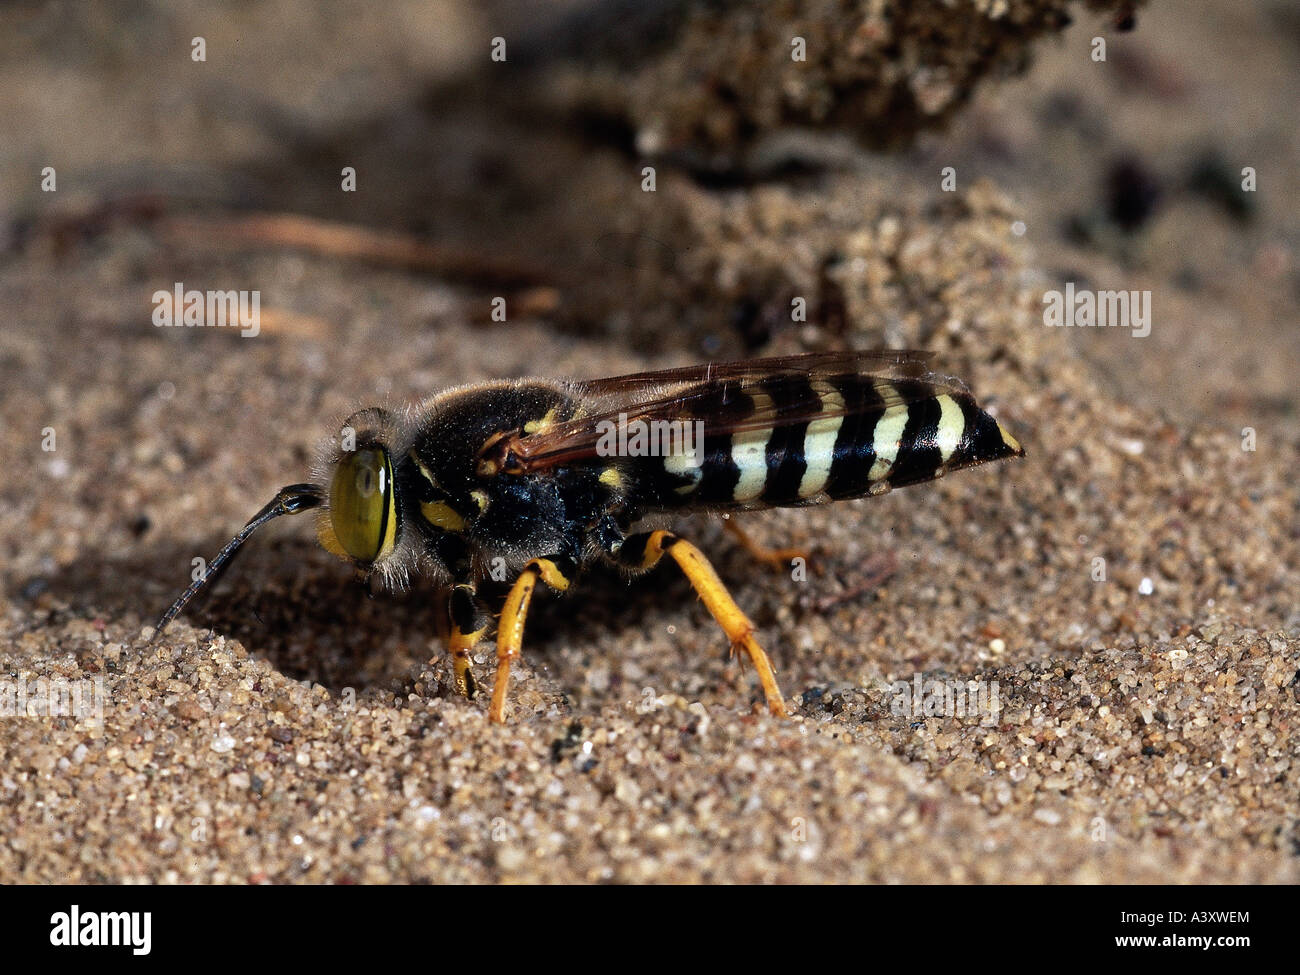 Zoologie / animaux, insectes, guêpes, Bembix rostrata, sur le sable, la distribution de masse : Europe, wasp, insecte, animal, Banque D'Images